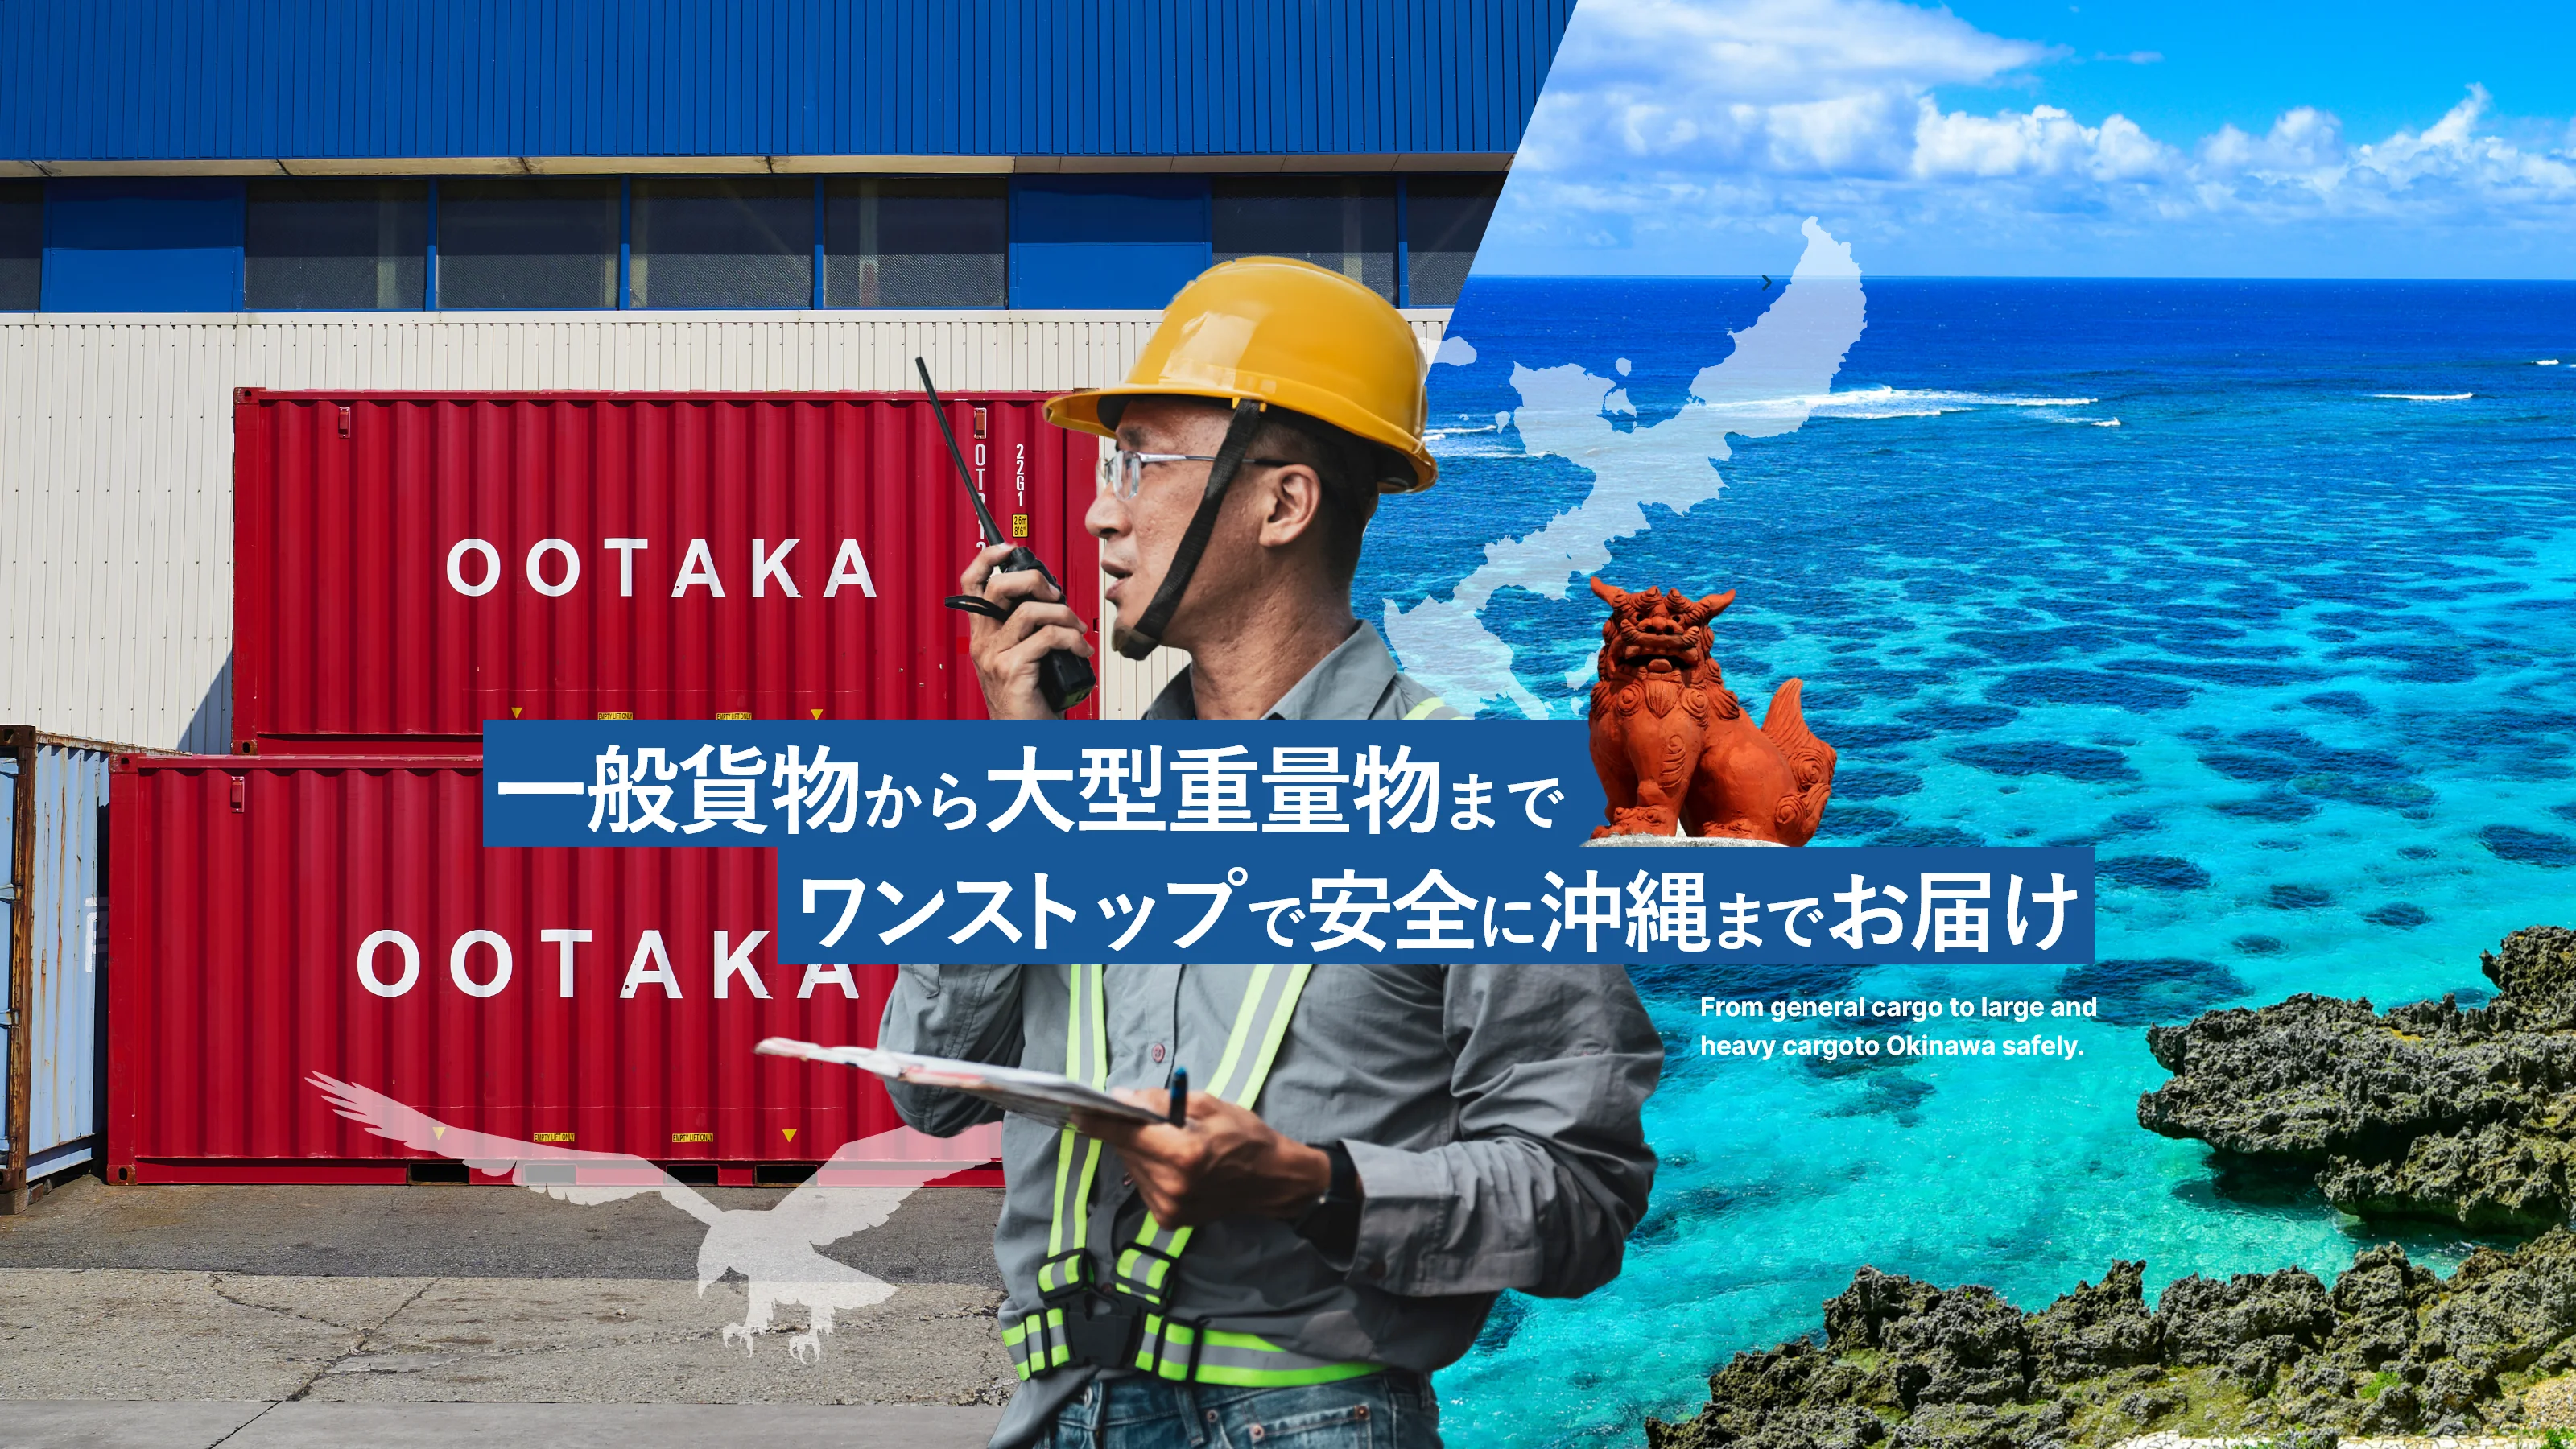 一般貨物から大型重量物までワンストップで安全に沖縄までお届け From general cargo to large and heavy cargoto Okinawa safely.